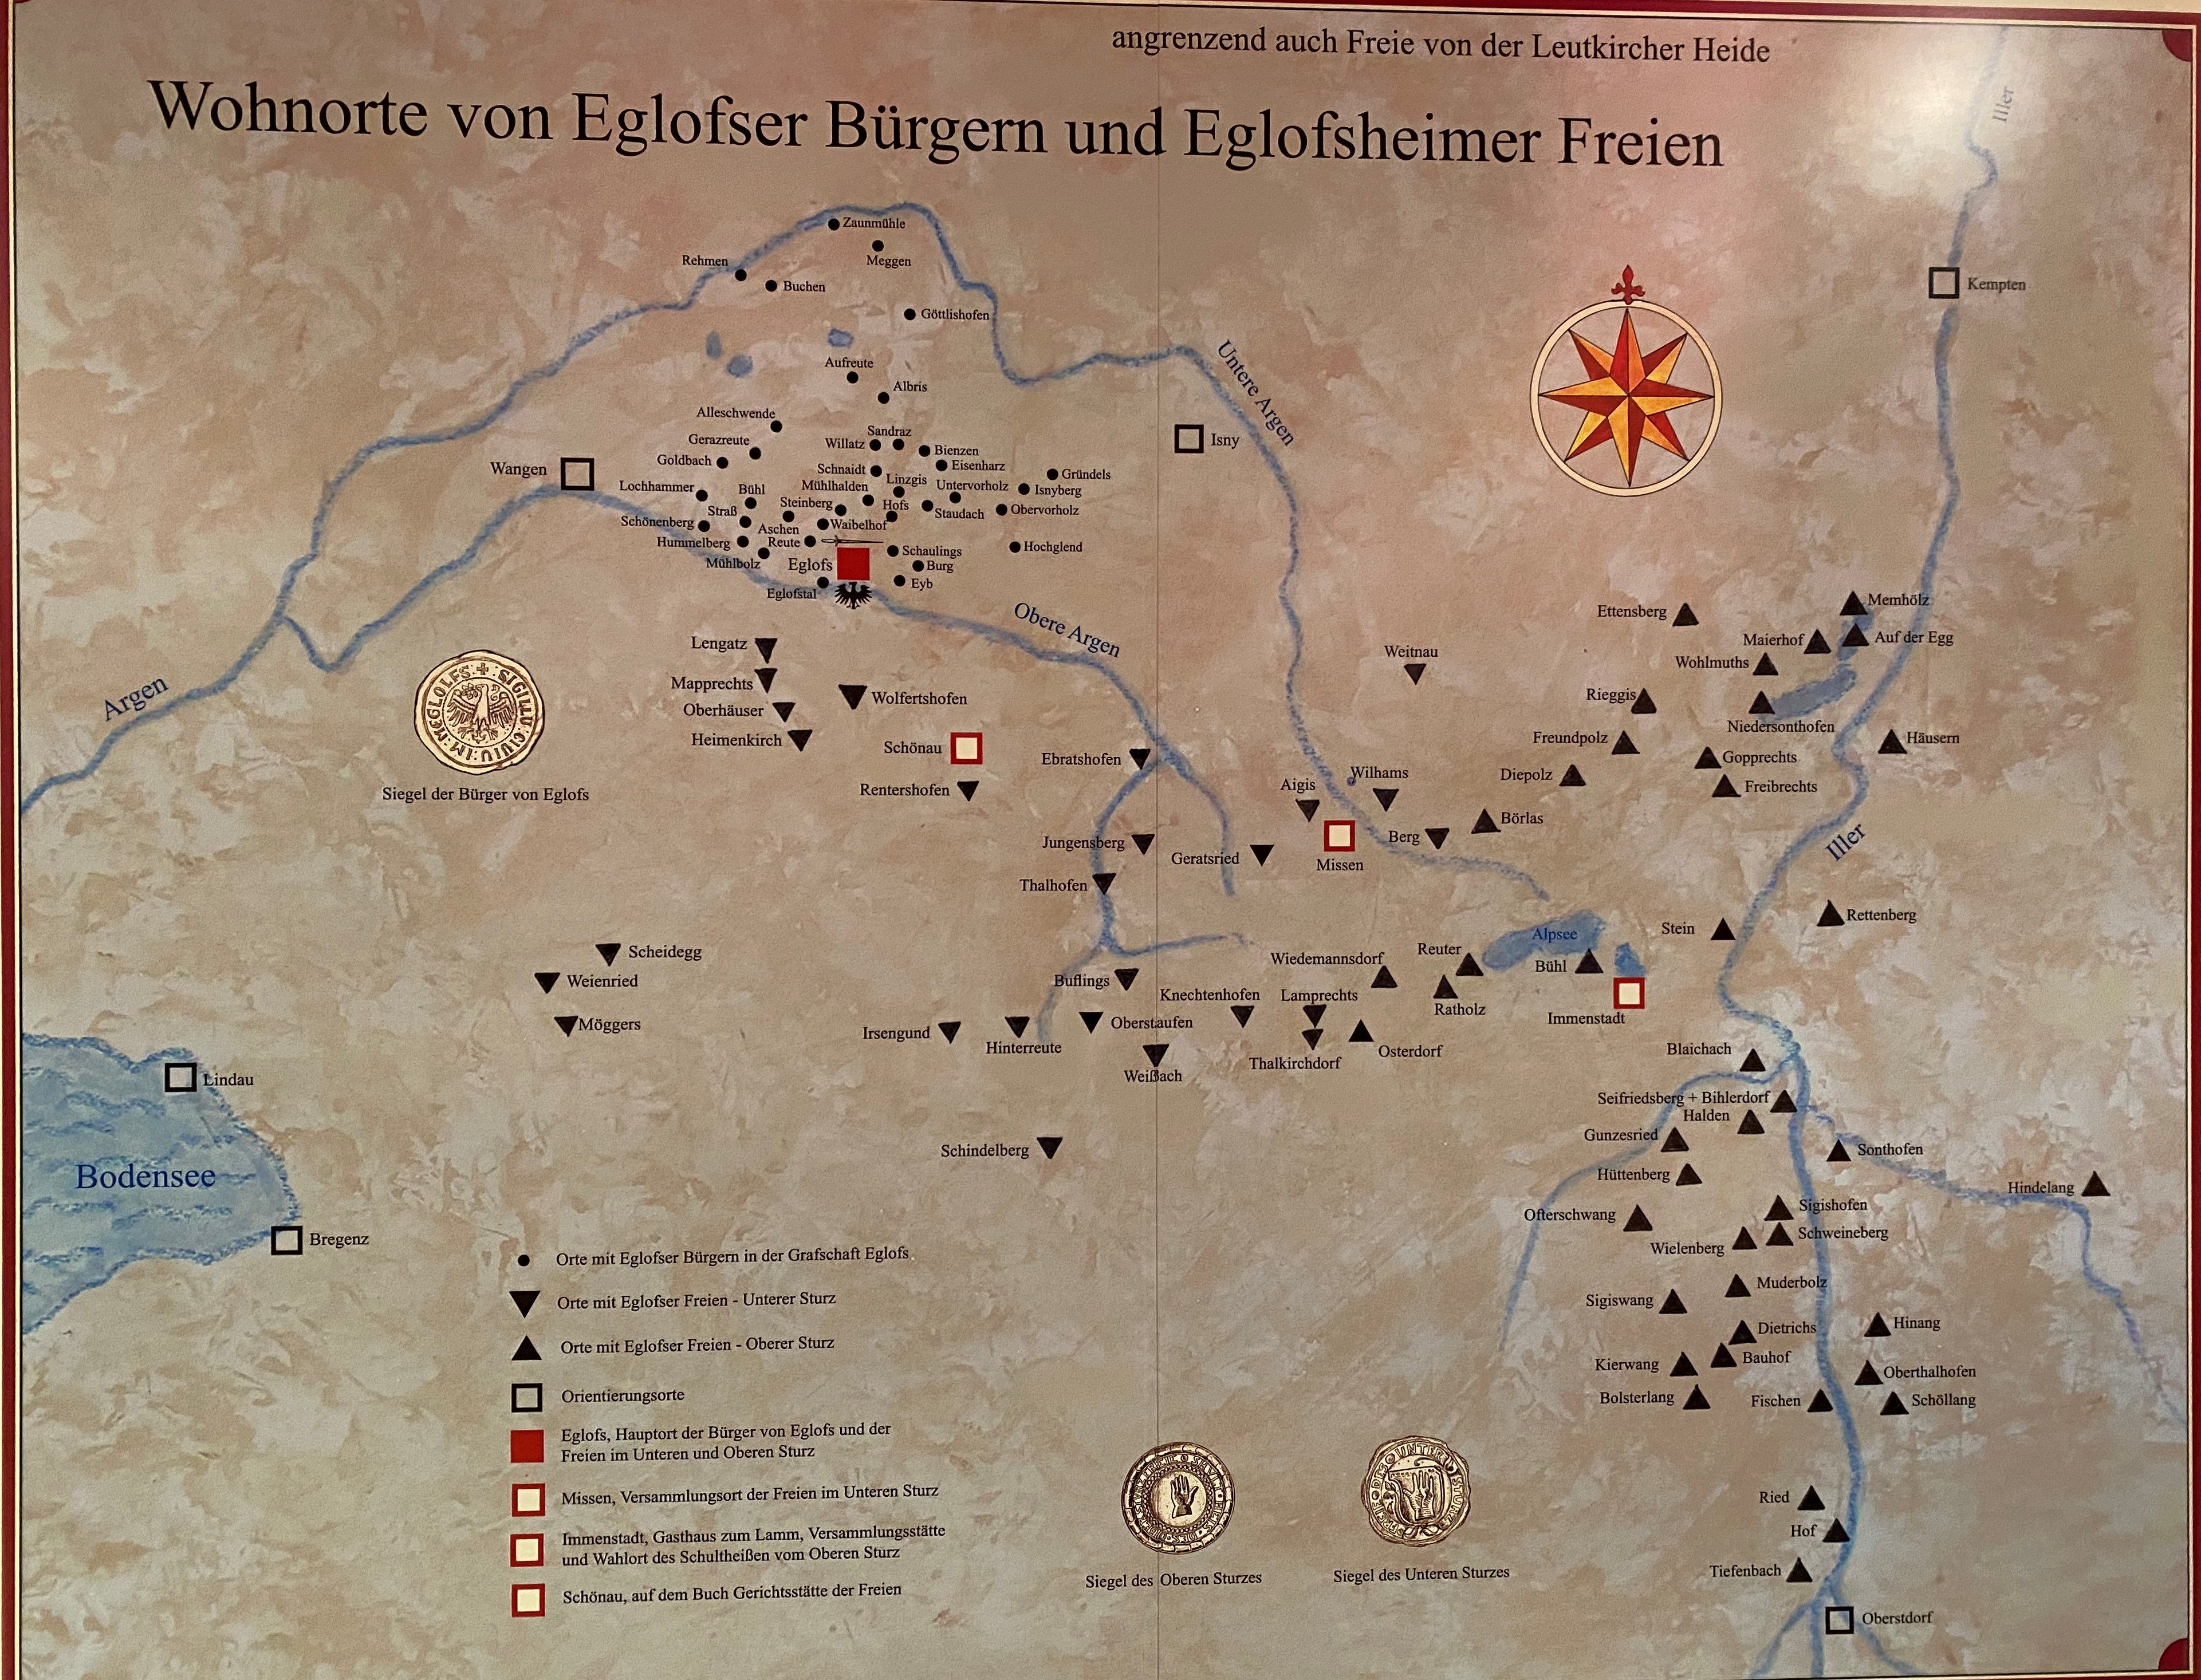 ME_0012 Landkarte der Freien zu Eglofs (Geschichts- und Heimatverein Eglofs e.V. CC BY-NC-SA)